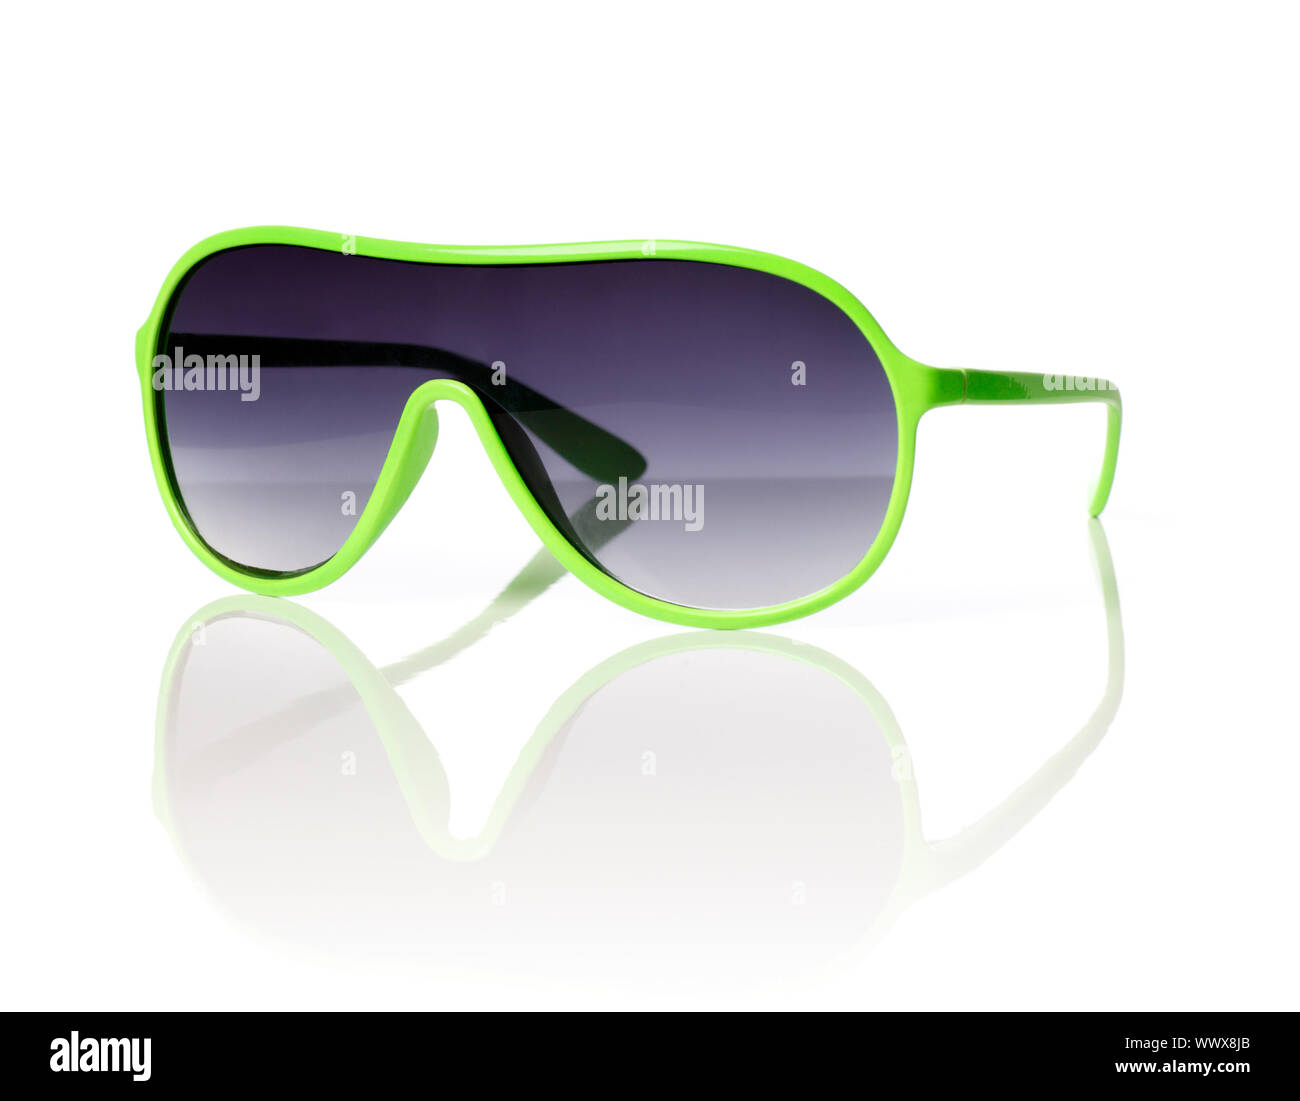 Billig grün Kunststoff im Stil der 80er Jahre Sonnenbrille auf reflektierenden Hintergrund. Stockfoto